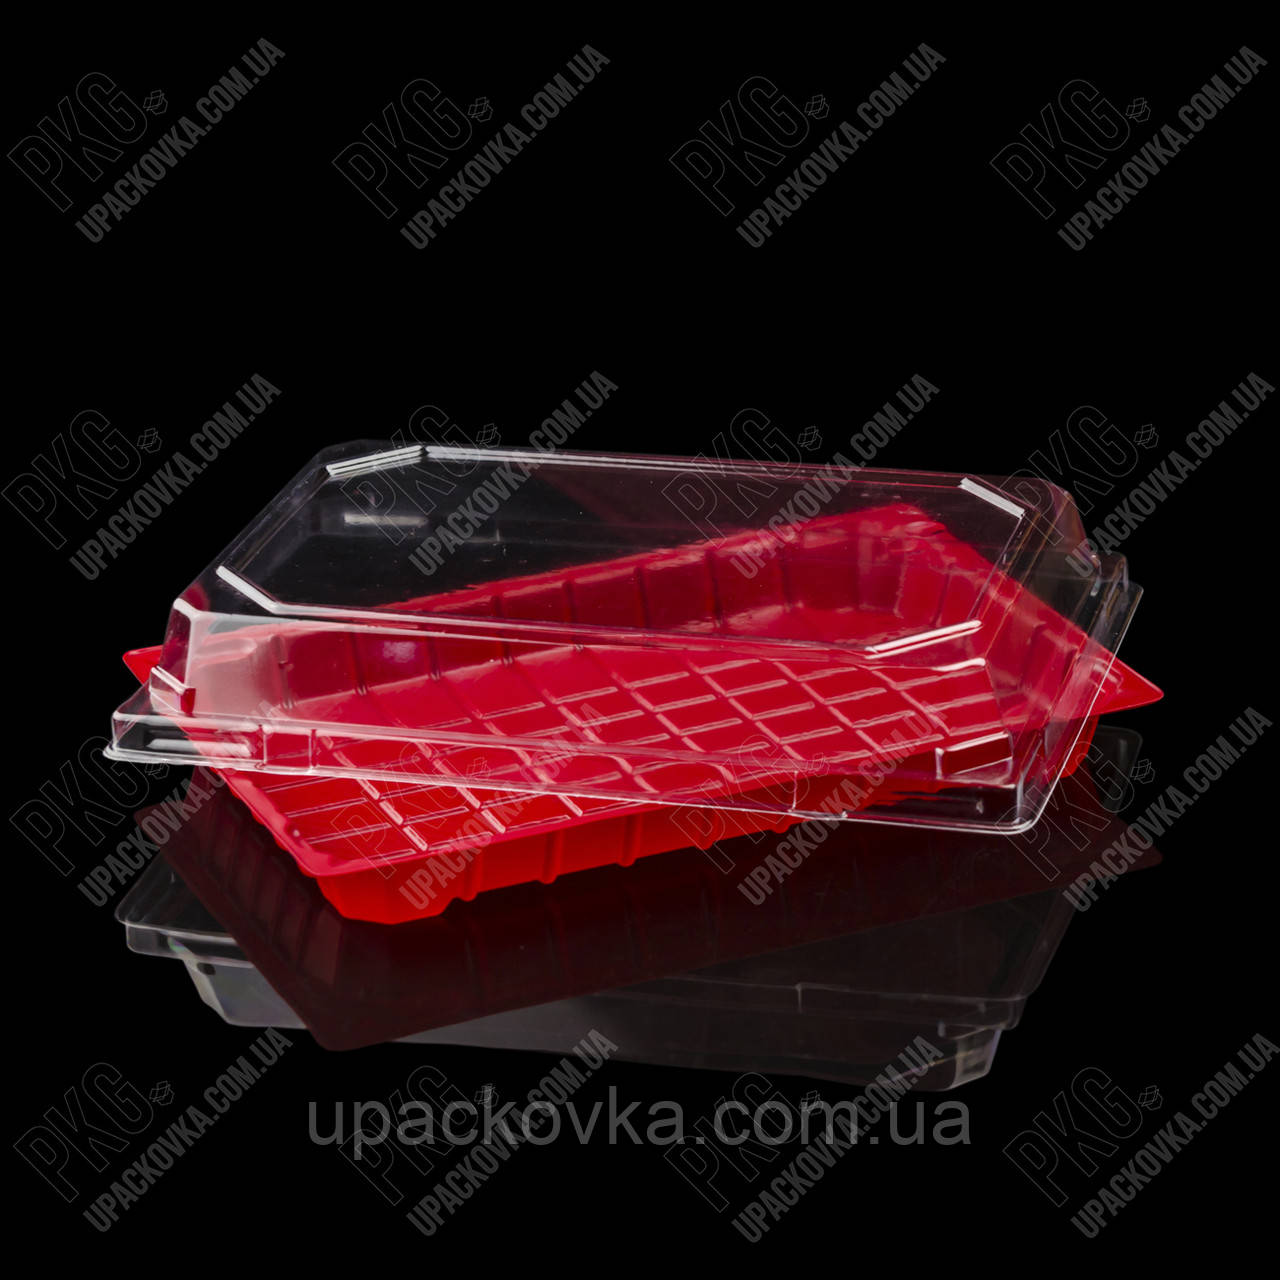 Пластикова упаковка для суші та ролів ПС-64 ЧЕРВОНА, 400 шт/уп